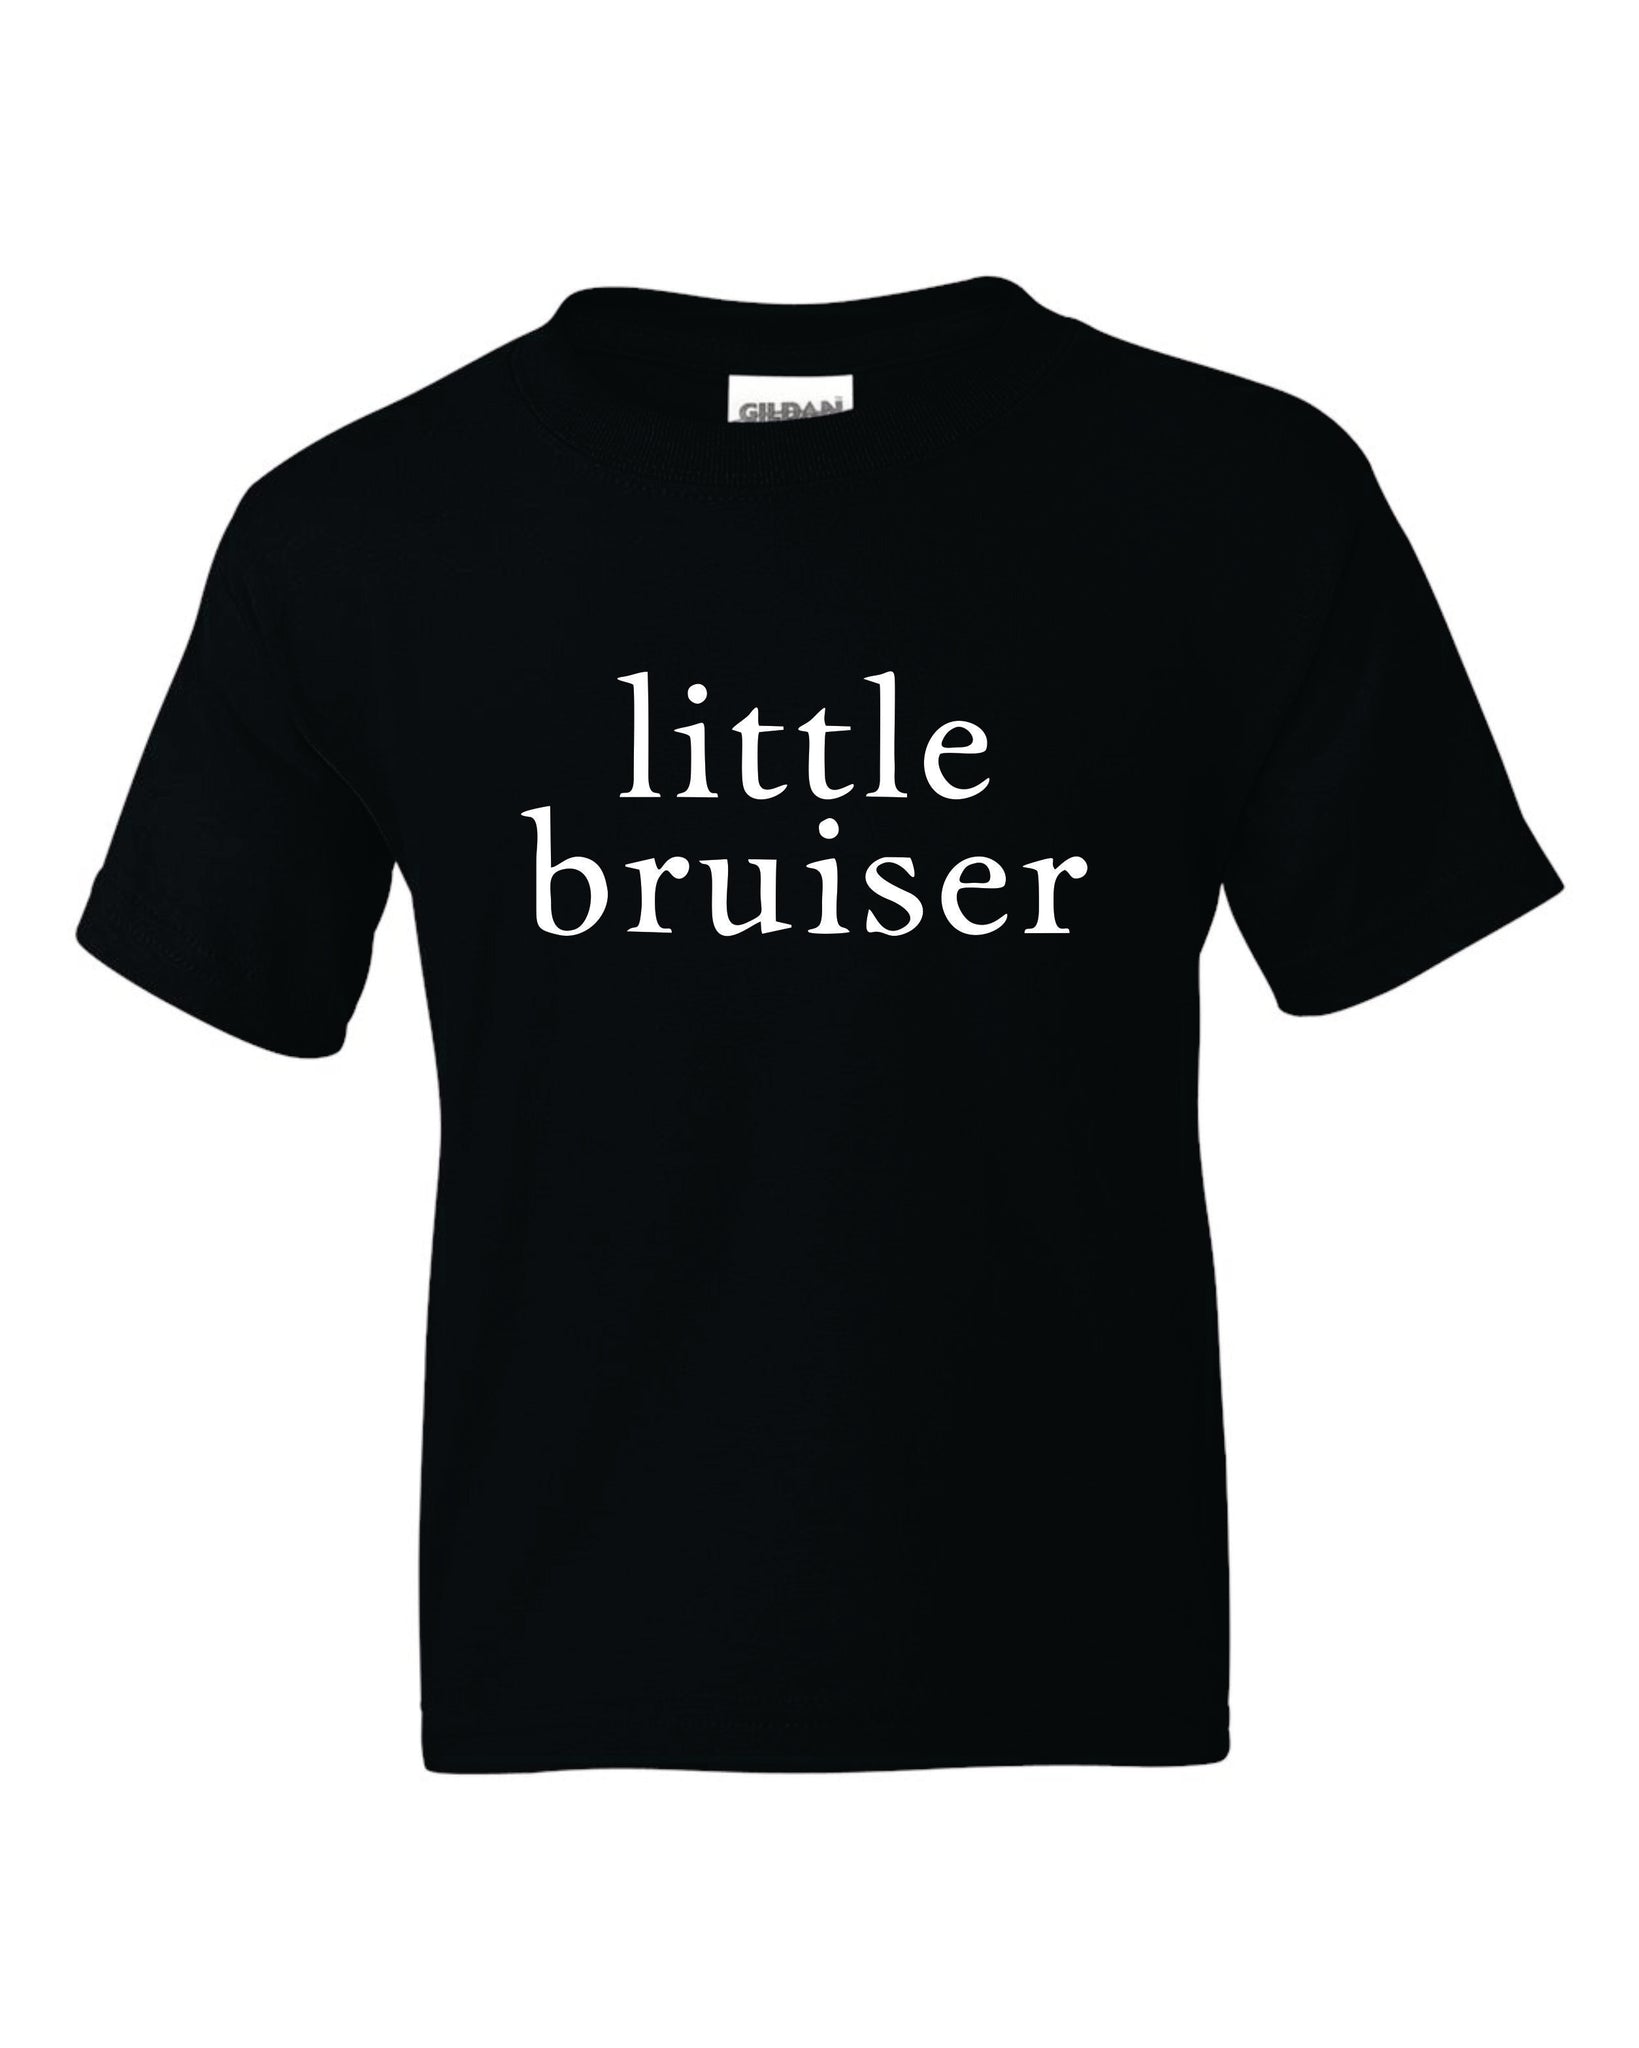 Pugilisticus Britannicus Little Bruiser Youth Unisex T-Shirt